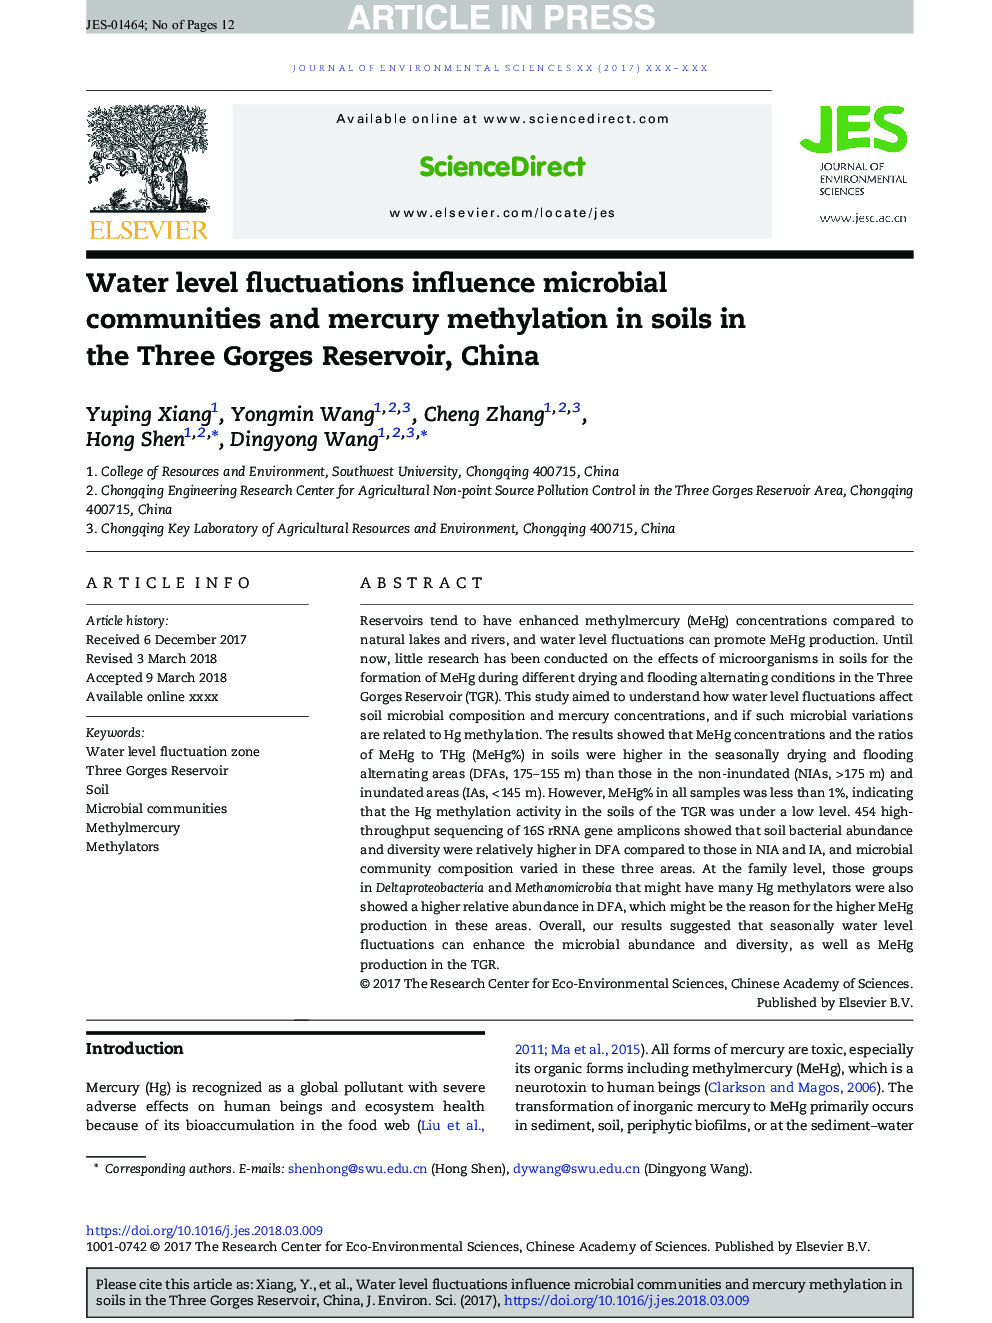 نوسانات سطح آب بر جوامع میکروبی و متیلاسیون جیوه در خاک های موجود در سه مخزن گران، چین 